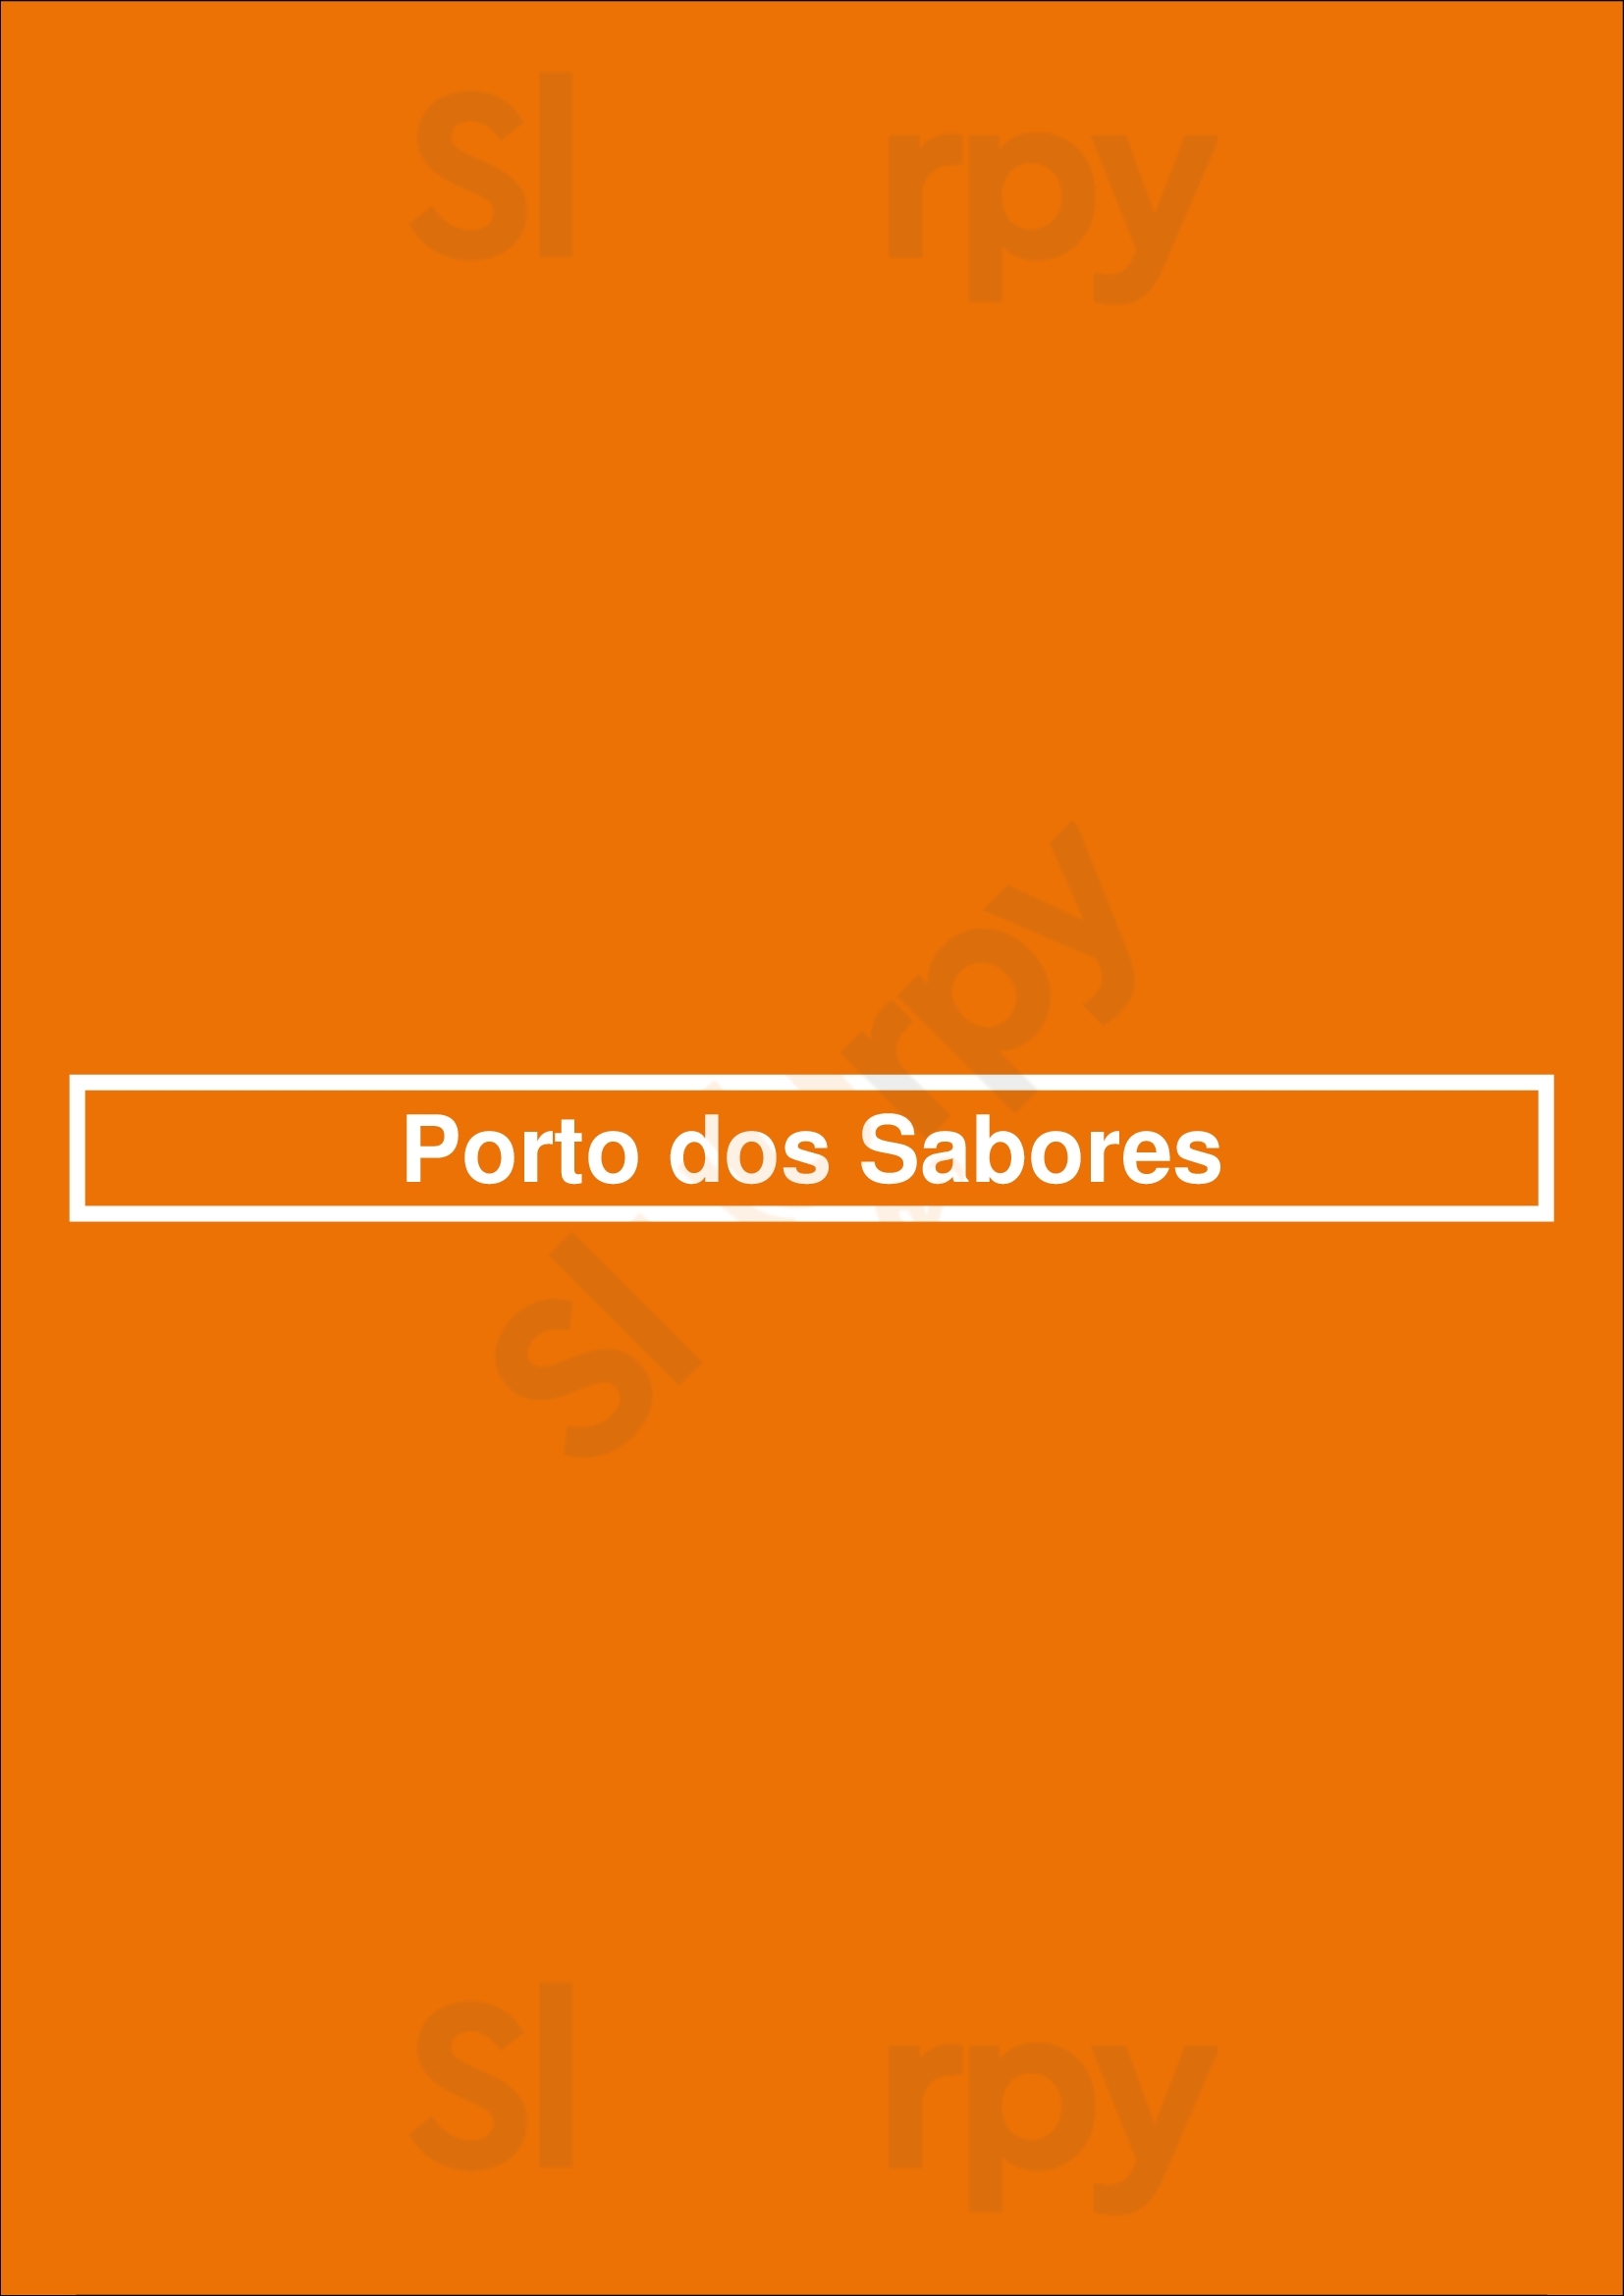 Porto Dos Sabores Matosinhos Menu - 1